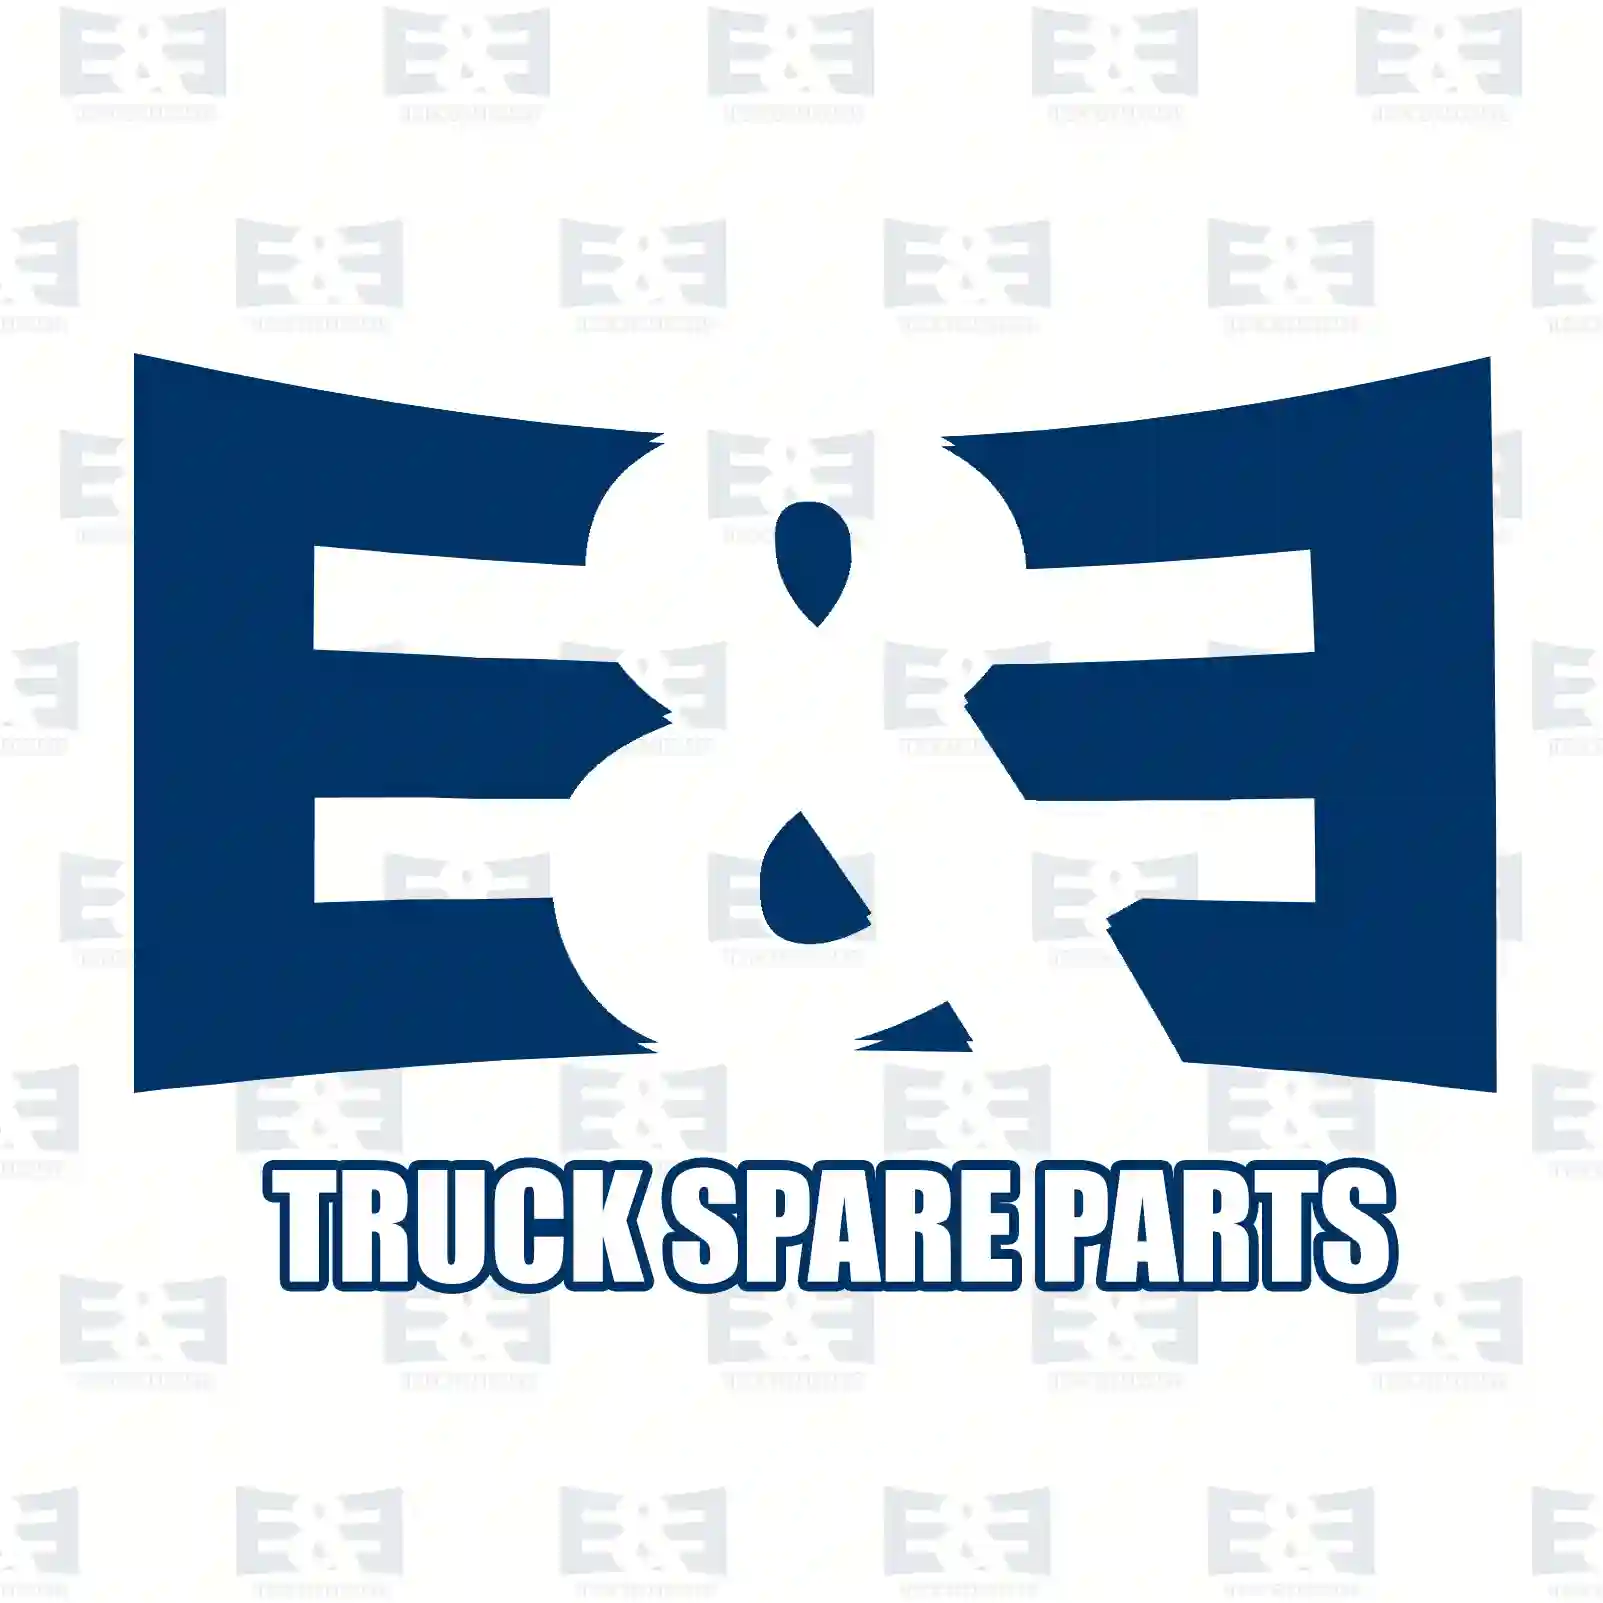 Gear shift rod, 2E2278808, 3192411, ZG30549-0008 ||  2E2278808 E&E Truck Spare Parts | Truck Spare Parts, Auotomotive Spare Parts Gear shift rod, 2E2278808, 3192411, ZG30549-0008 ||  2E2278808 E&E Truck Spare Parts | Truck Spare Parts, Auotomotive Spare Parts